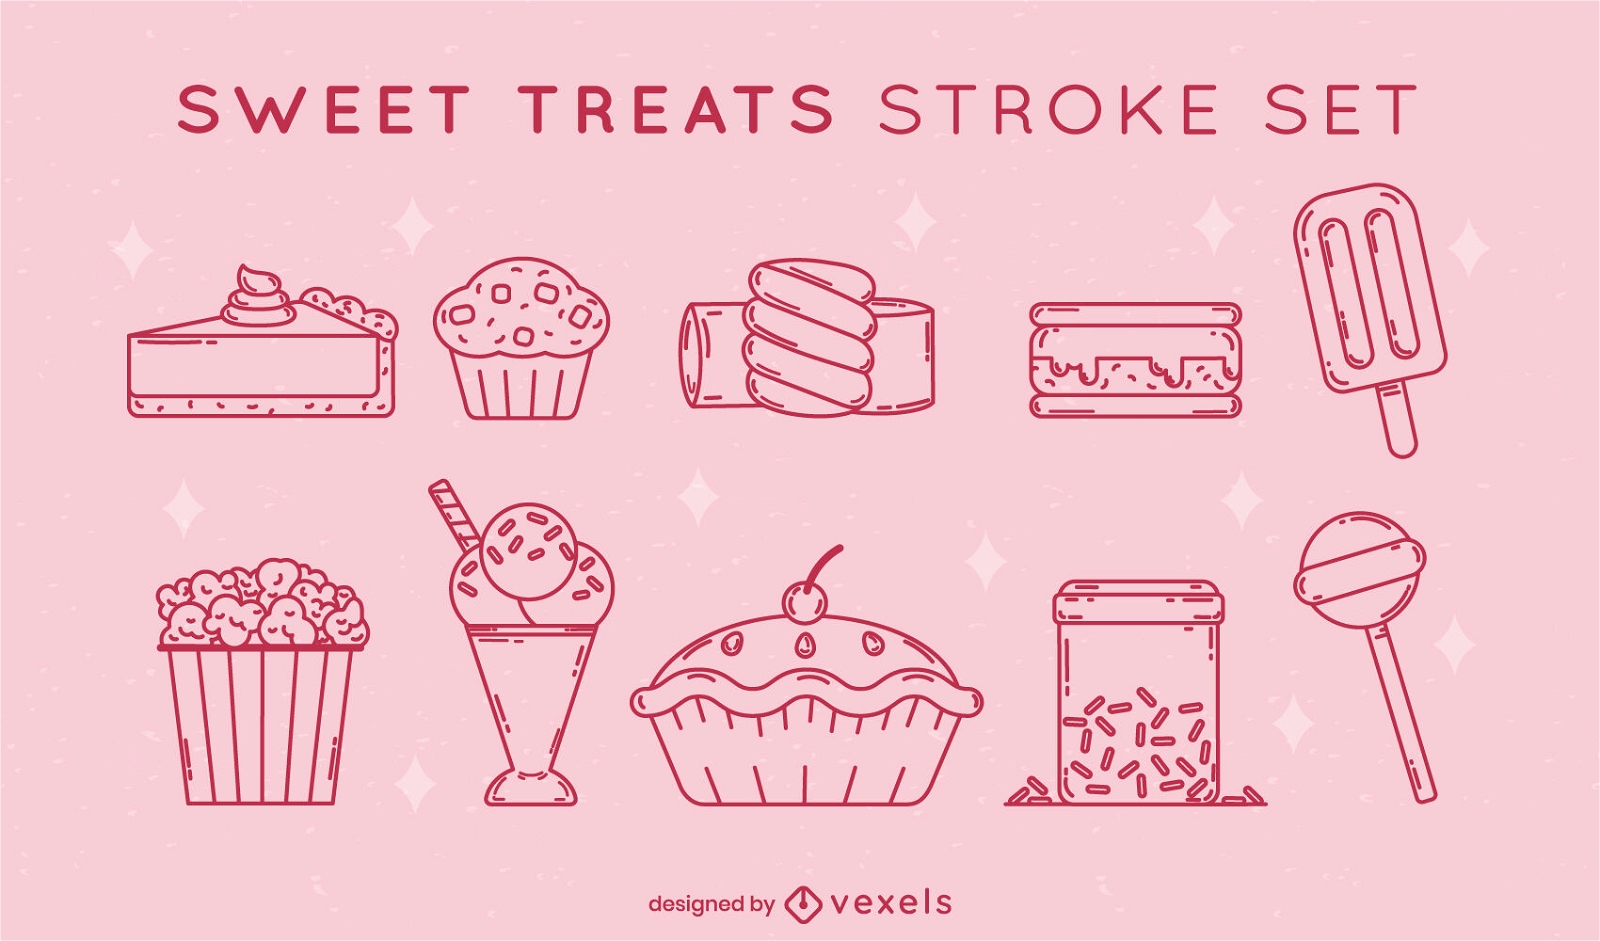 Sweet treats set stroke